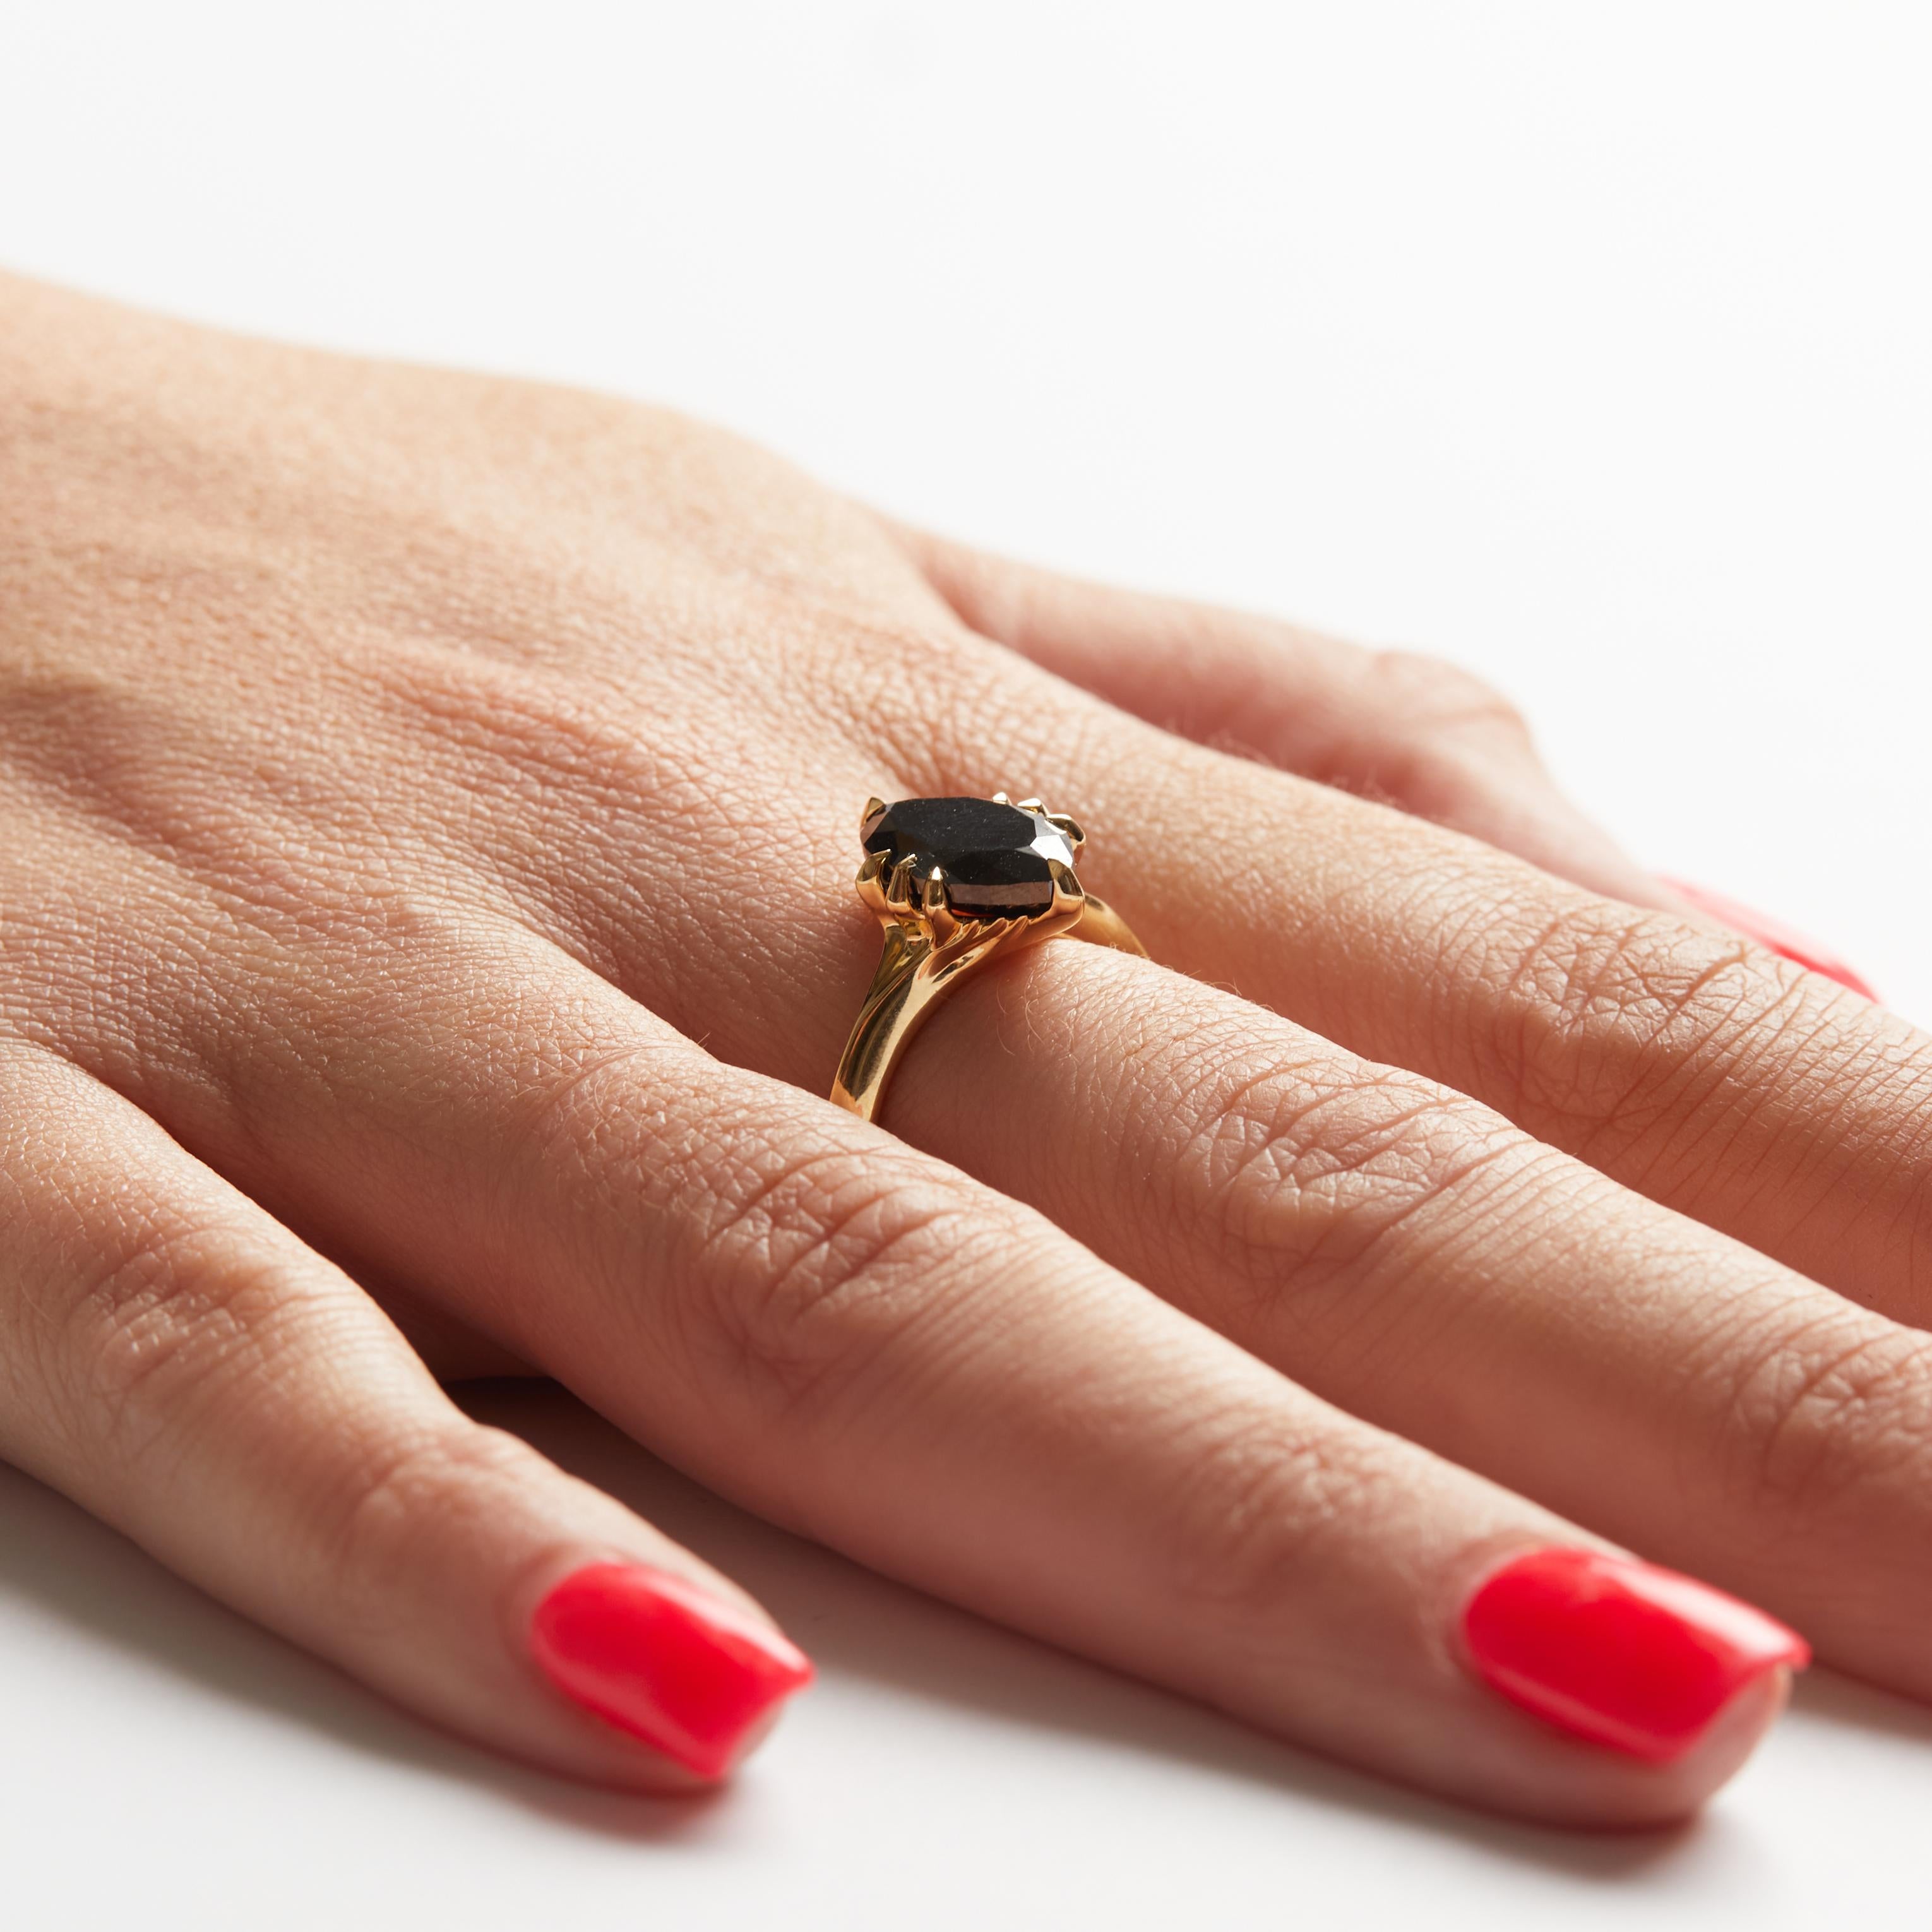 Vergangenheit, Gegenwart und Zukunft

Ring aus 18 Karat Gelbgold und schwarzen Diamanten. Der Mittelstein ist ein 12,8 mm x 7,9 mm großer schwarzer Marquise-Diamant von 3,54 Karat.